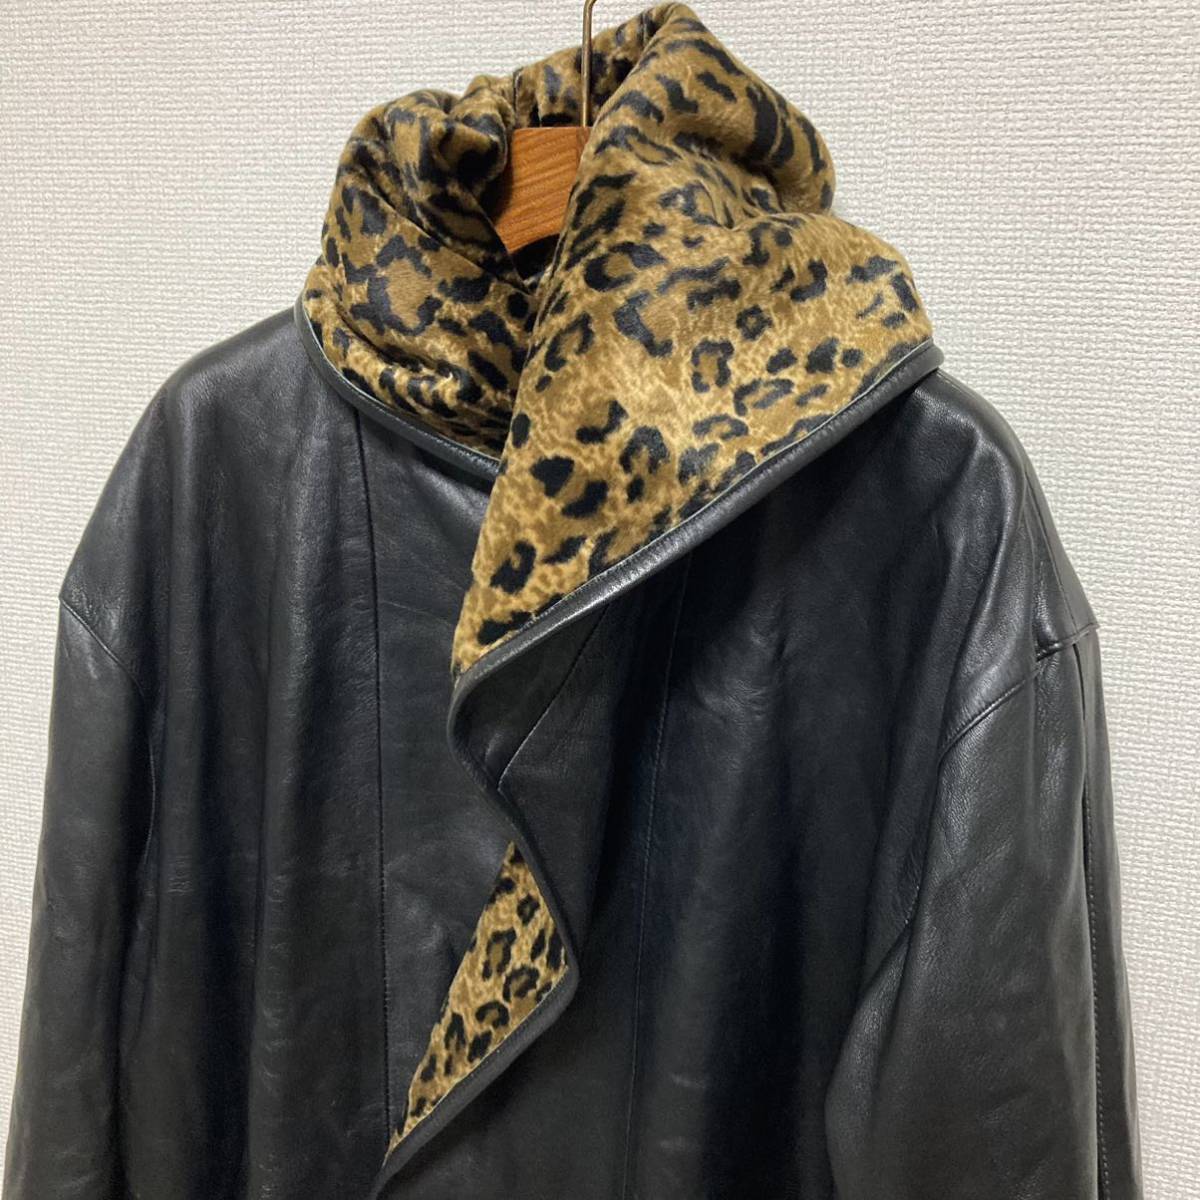  хорошая вещь # искусственный мех овечья кожа # двусторонний леопардовая расцветка Leopard пальто F Brown черный леопардовый рисунок капот кожа ягненка двойной для мужчин и женщин 